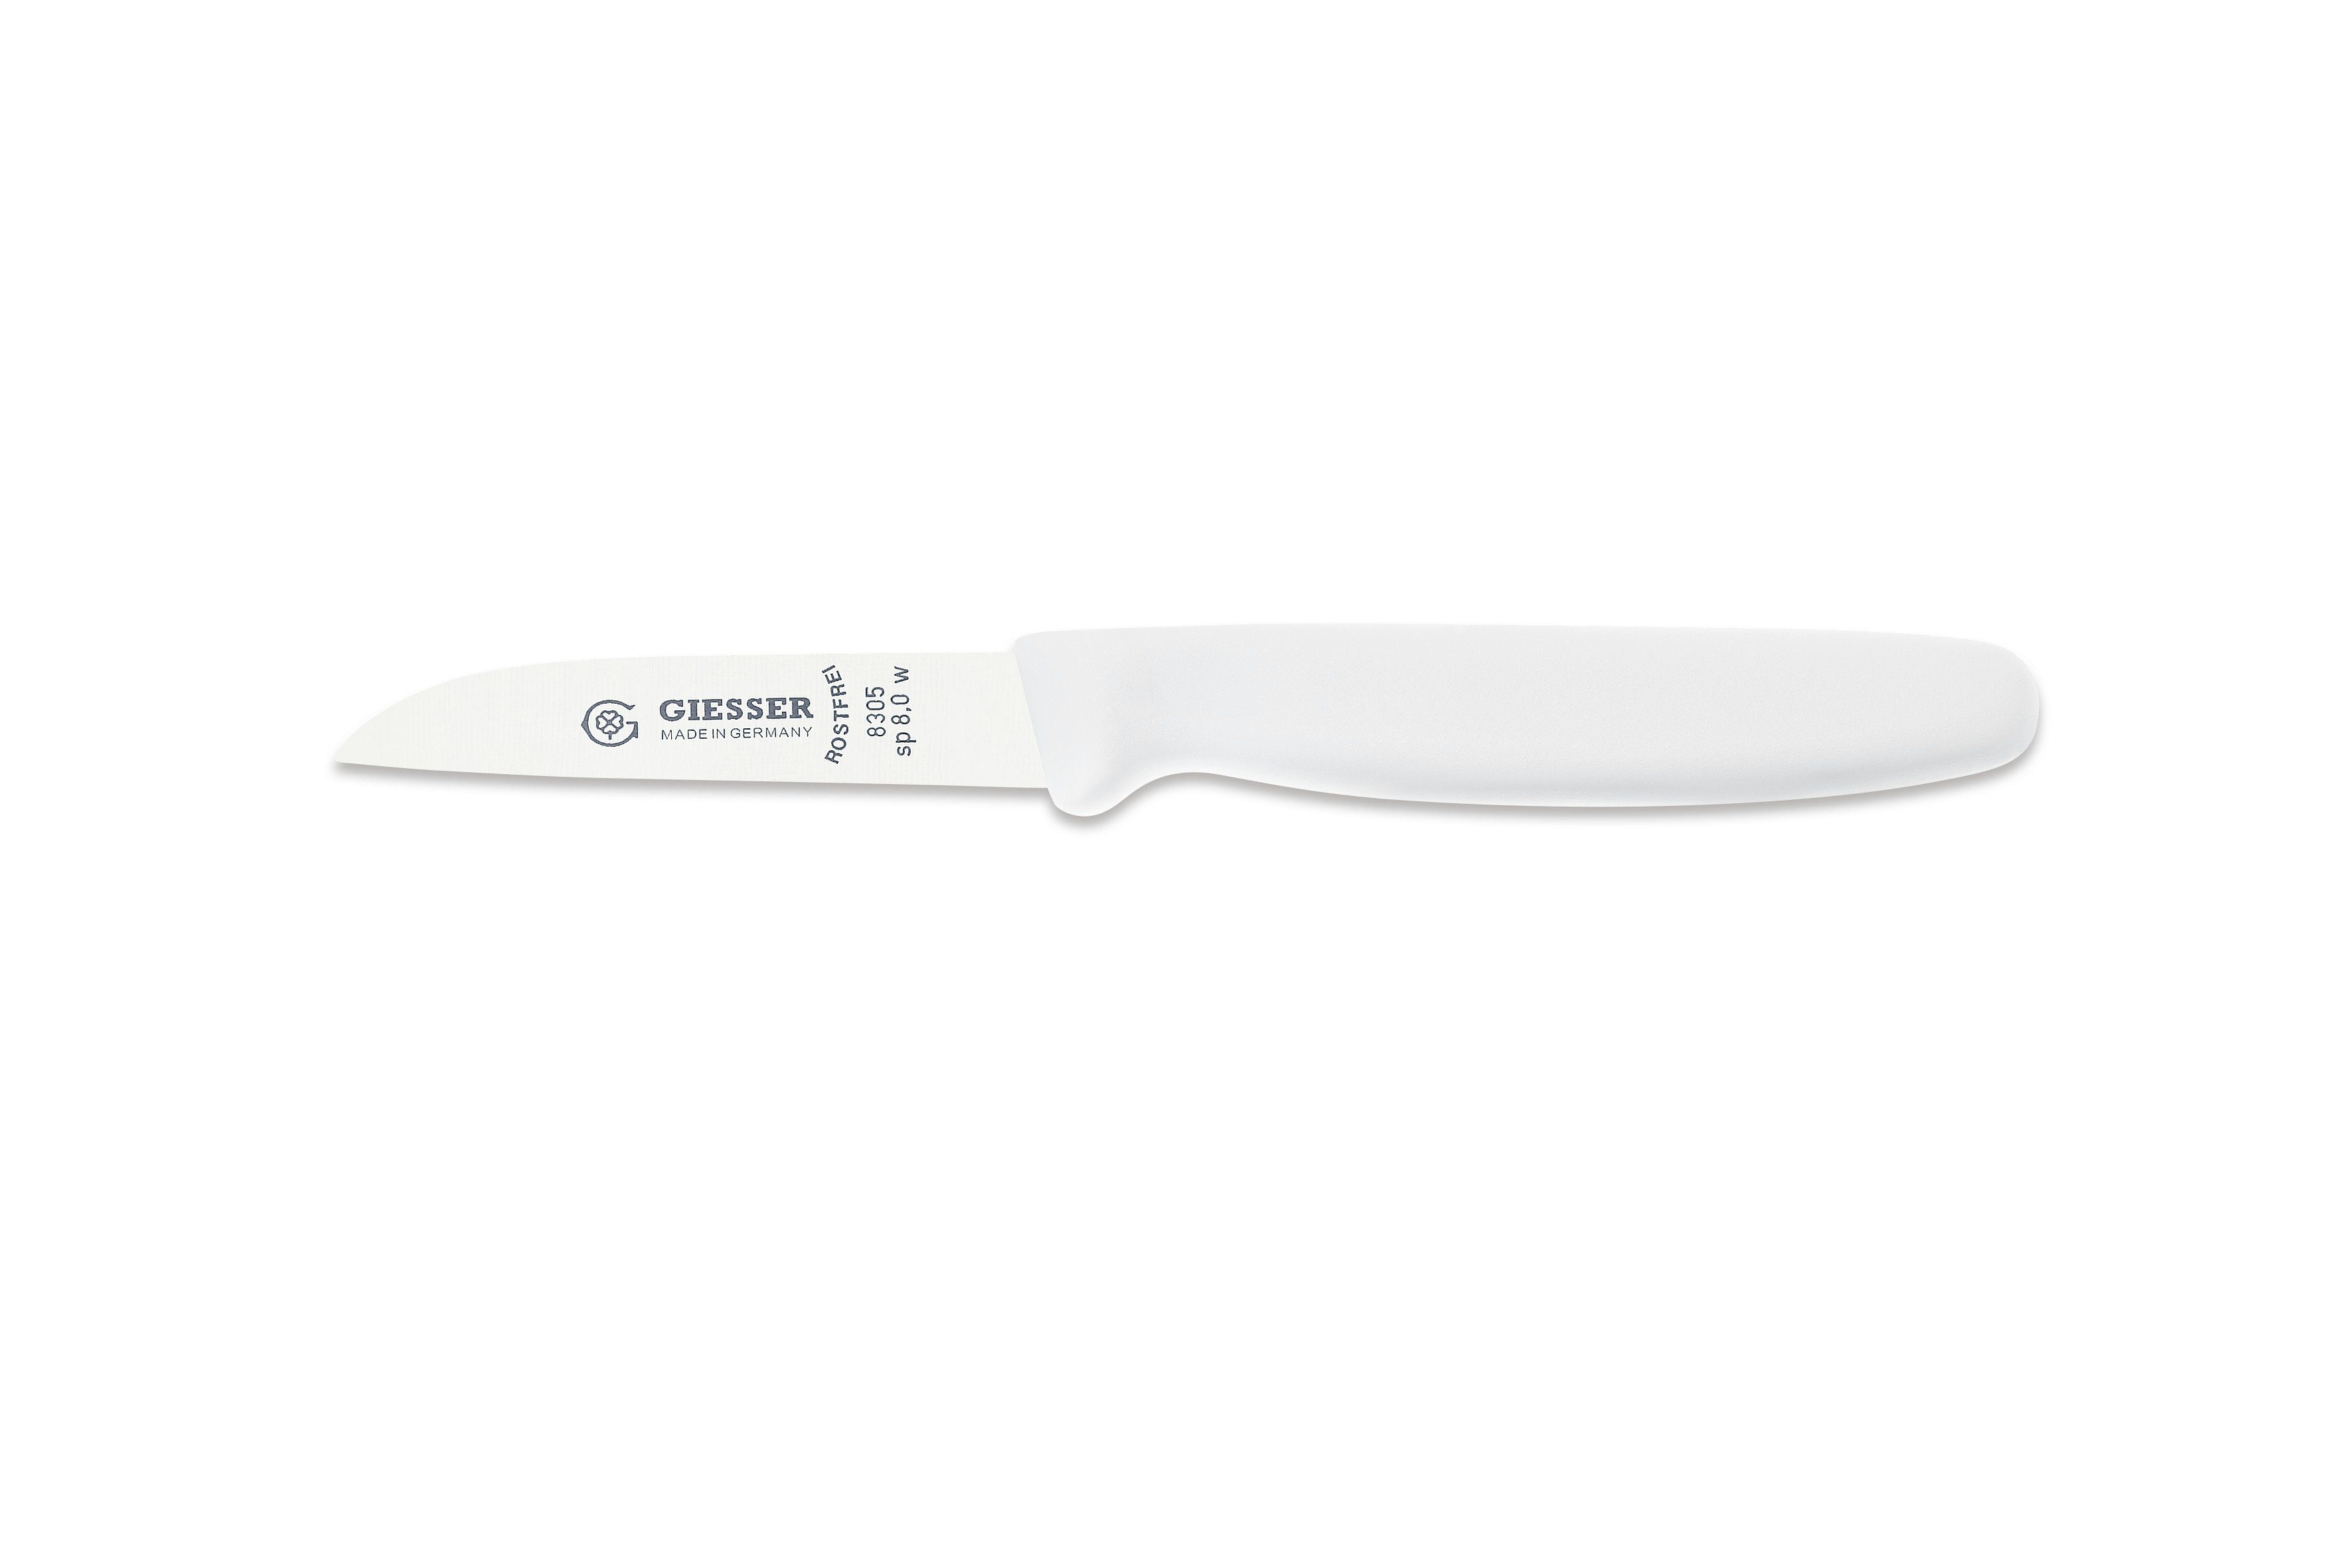 Giesser Messer Gemüsemesser Küchenmesser 8305 sp 8 alle Farben, Küchenmesser gerade Schneide 8 cm, Made in Germany Weiß